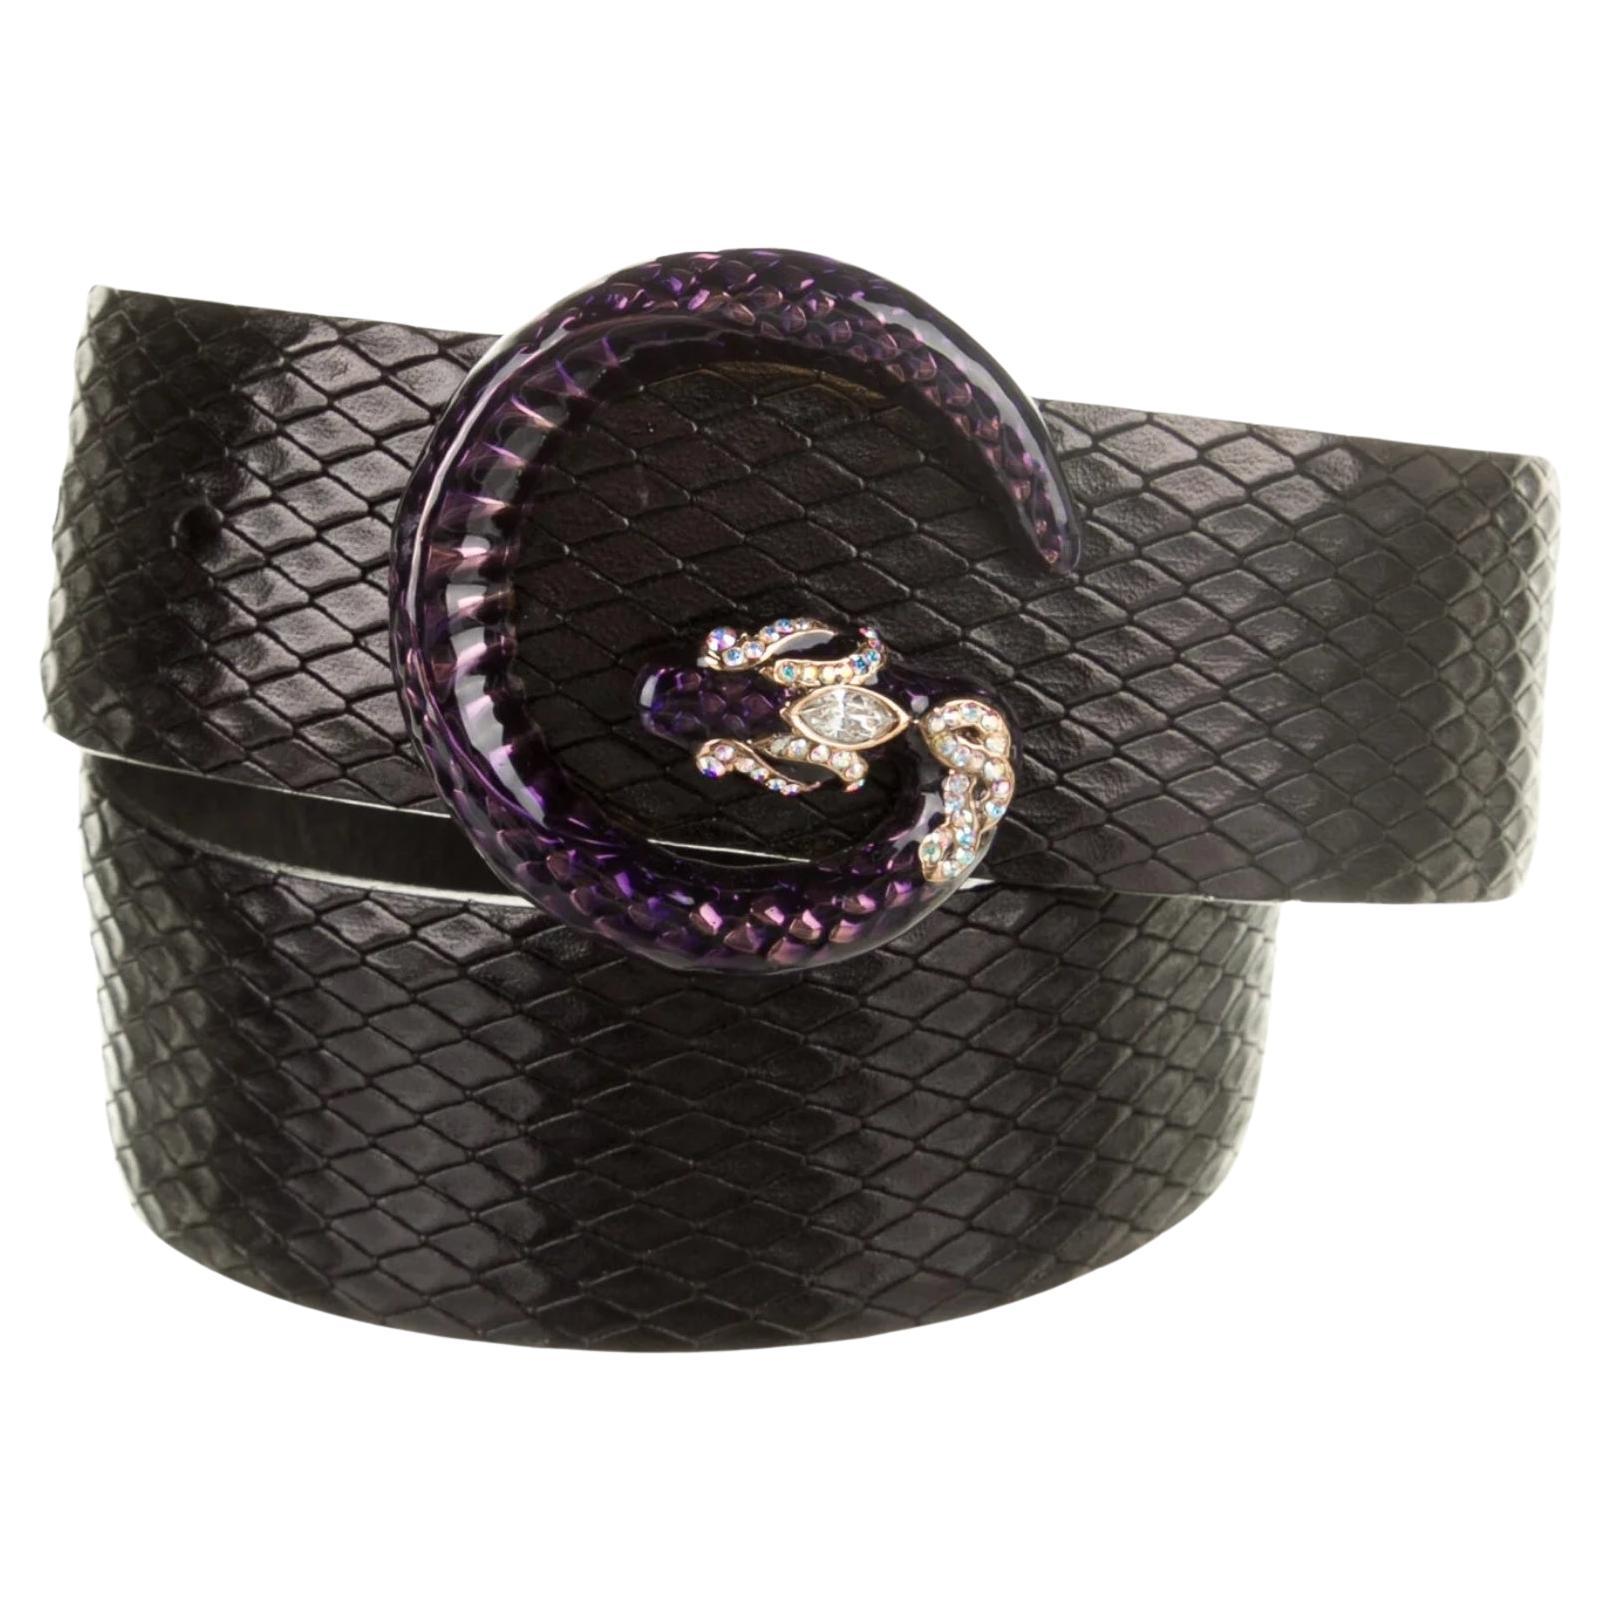 Gucci Tom Ford Python Schwarzer Python-Schlangengürtel aus Leder in Violett mit G-Logo (85/34)